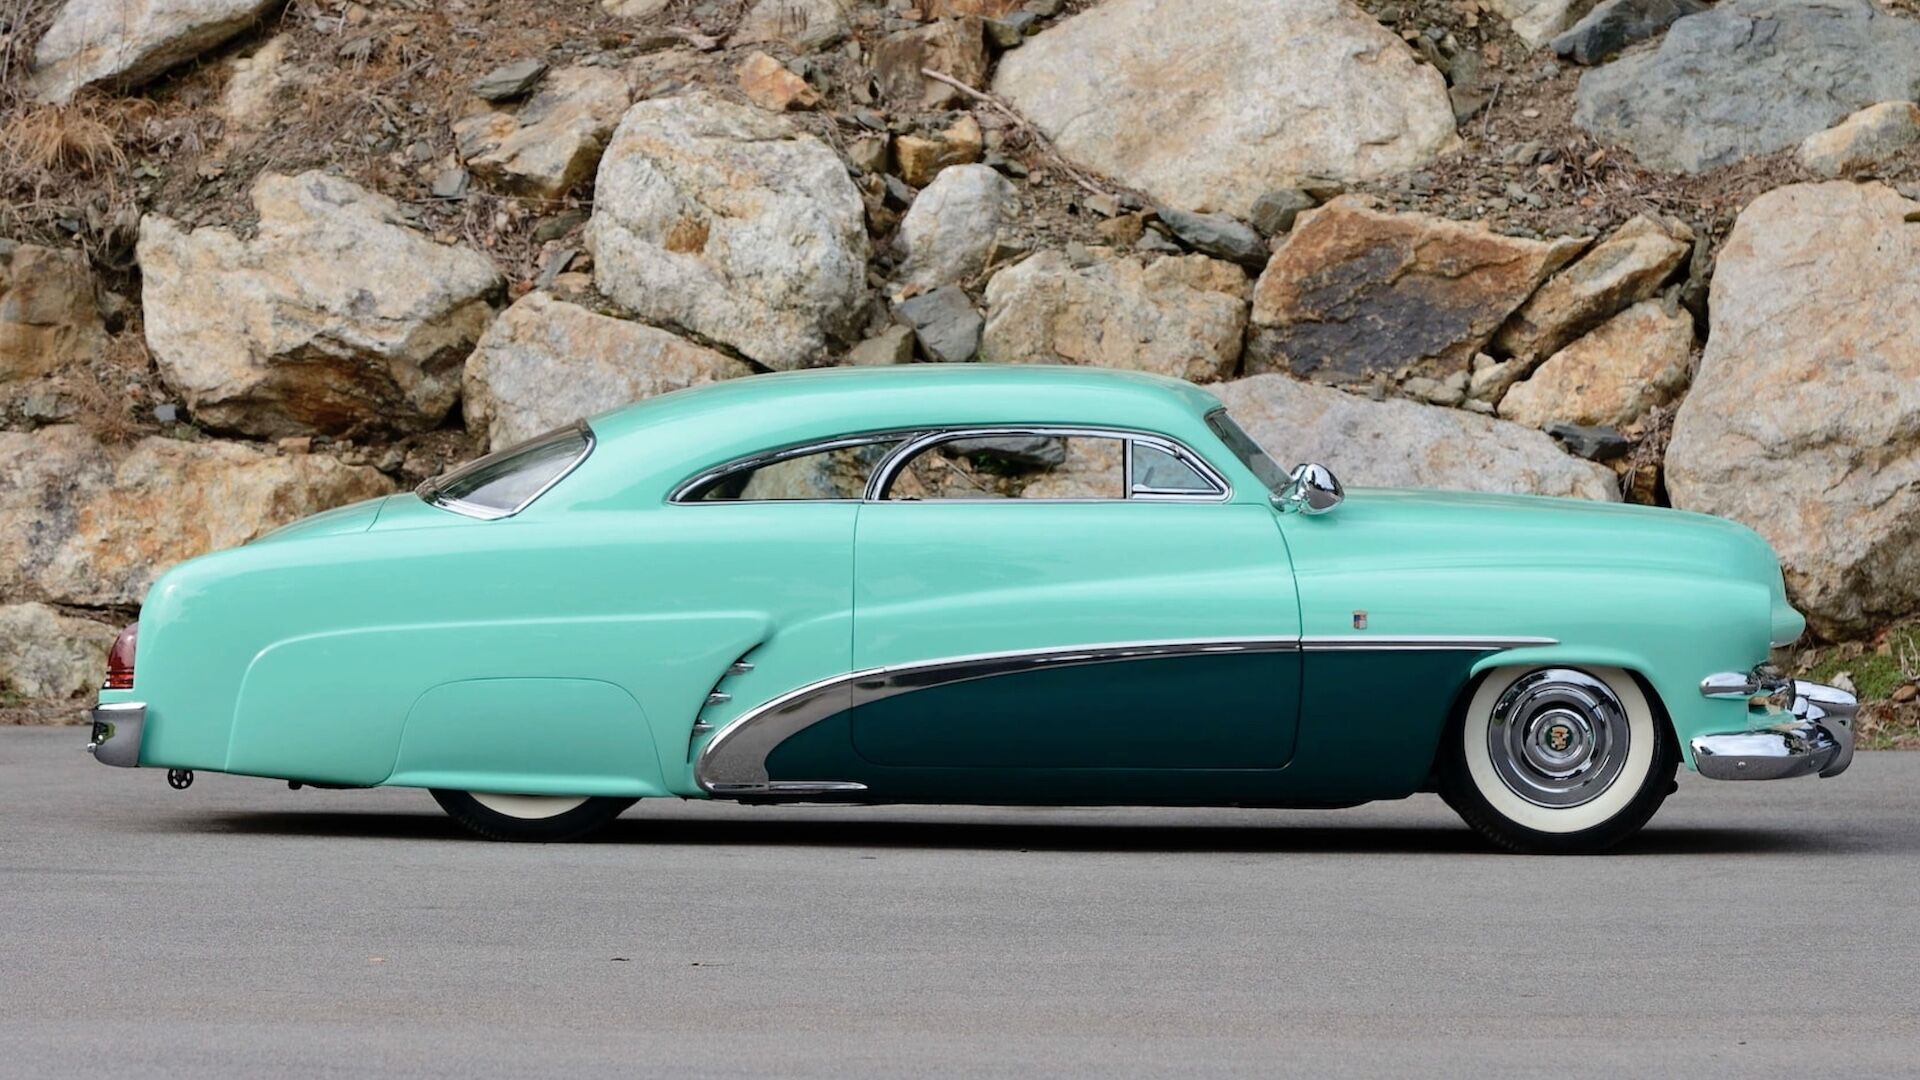 Ефектне купе було замовлено бізнесменом та великим любителем автомобілів Бобом Хірохата у 1952 році